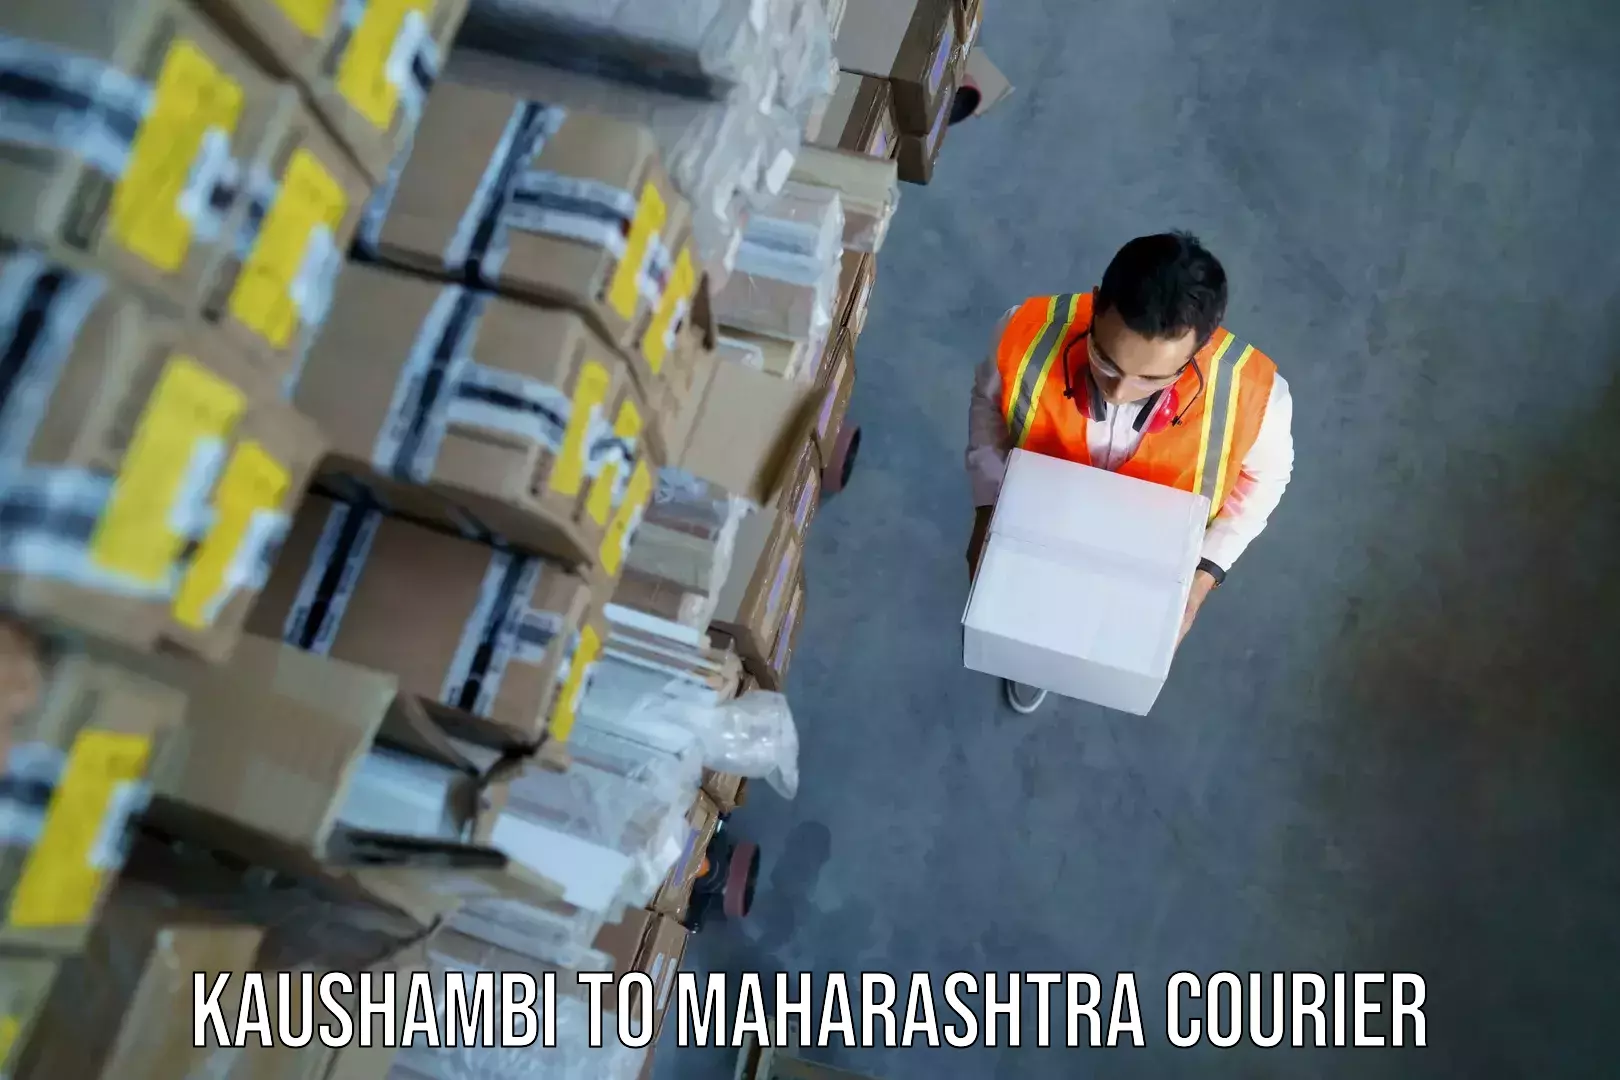 Baggage transport professionals Kaushambi to Maharashtra